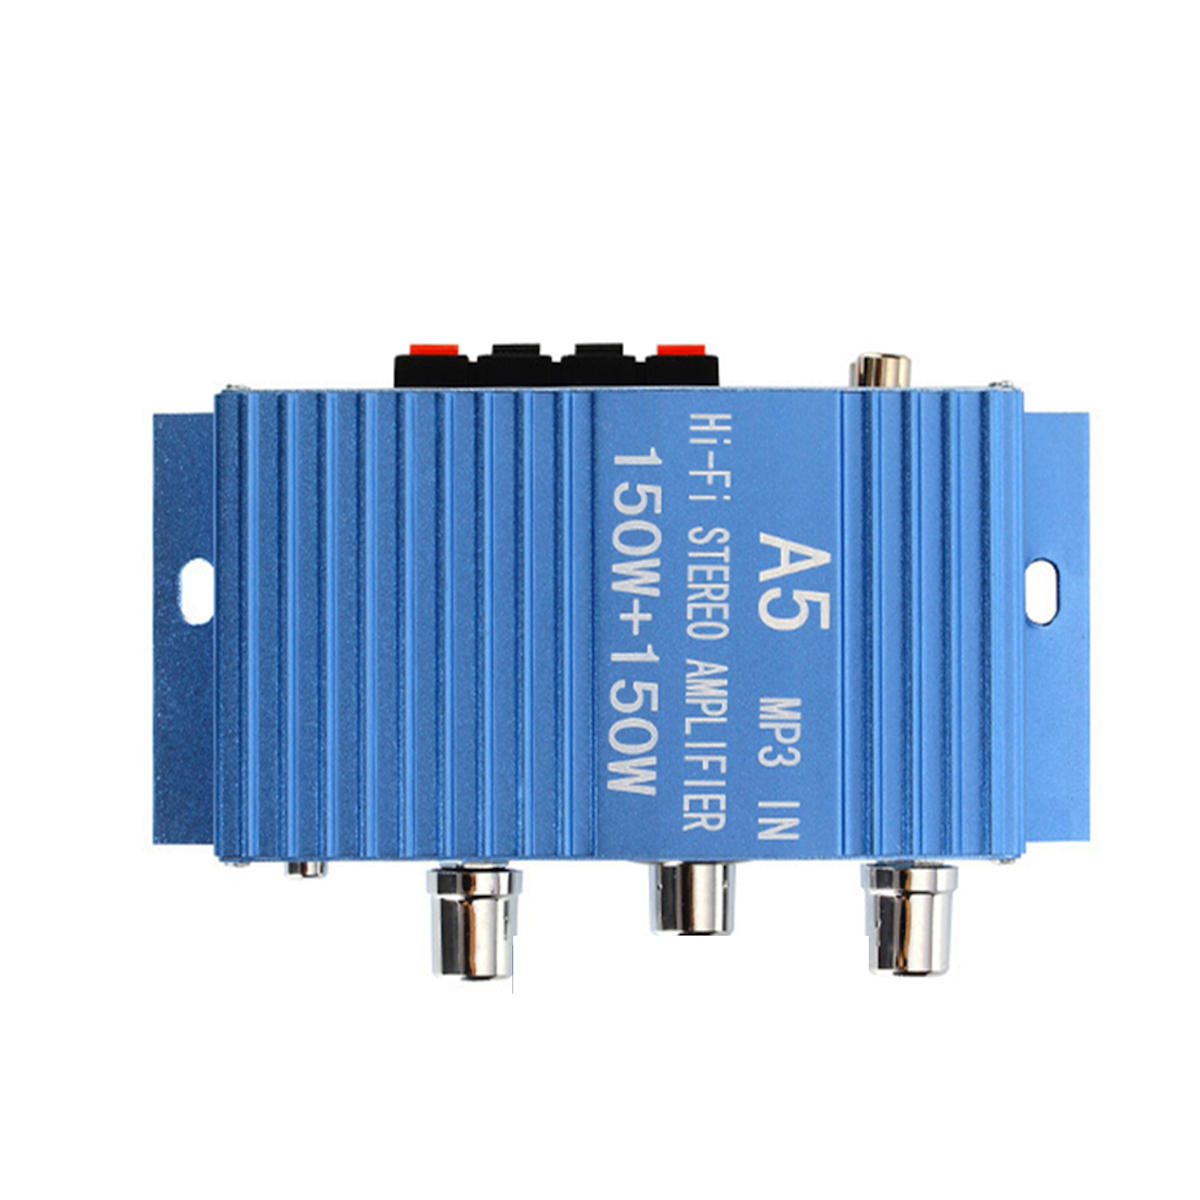 

DX-A5 DC 12-15V Авто Аудио высокая мощность Усилитель Amp Board Мощный бас сабвуфера 2 канала Amp for Авто / Для дома /